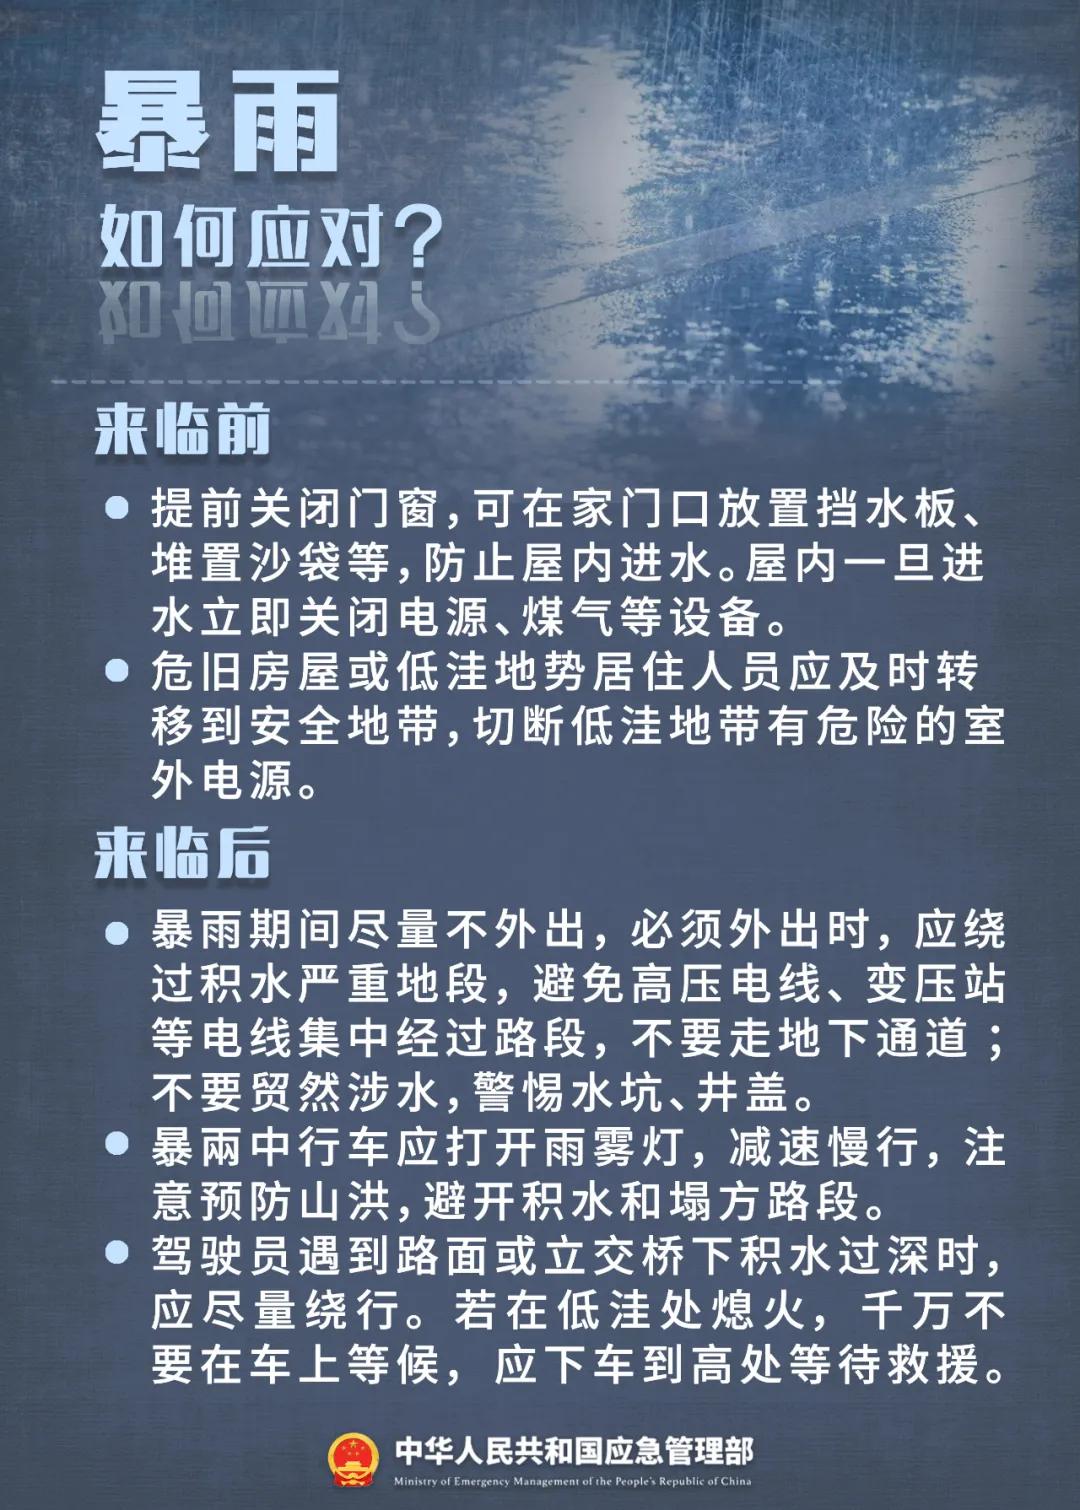 ●来源：应急管理部 中国天气网 央视新闻 羊城晚报 中国应急管理